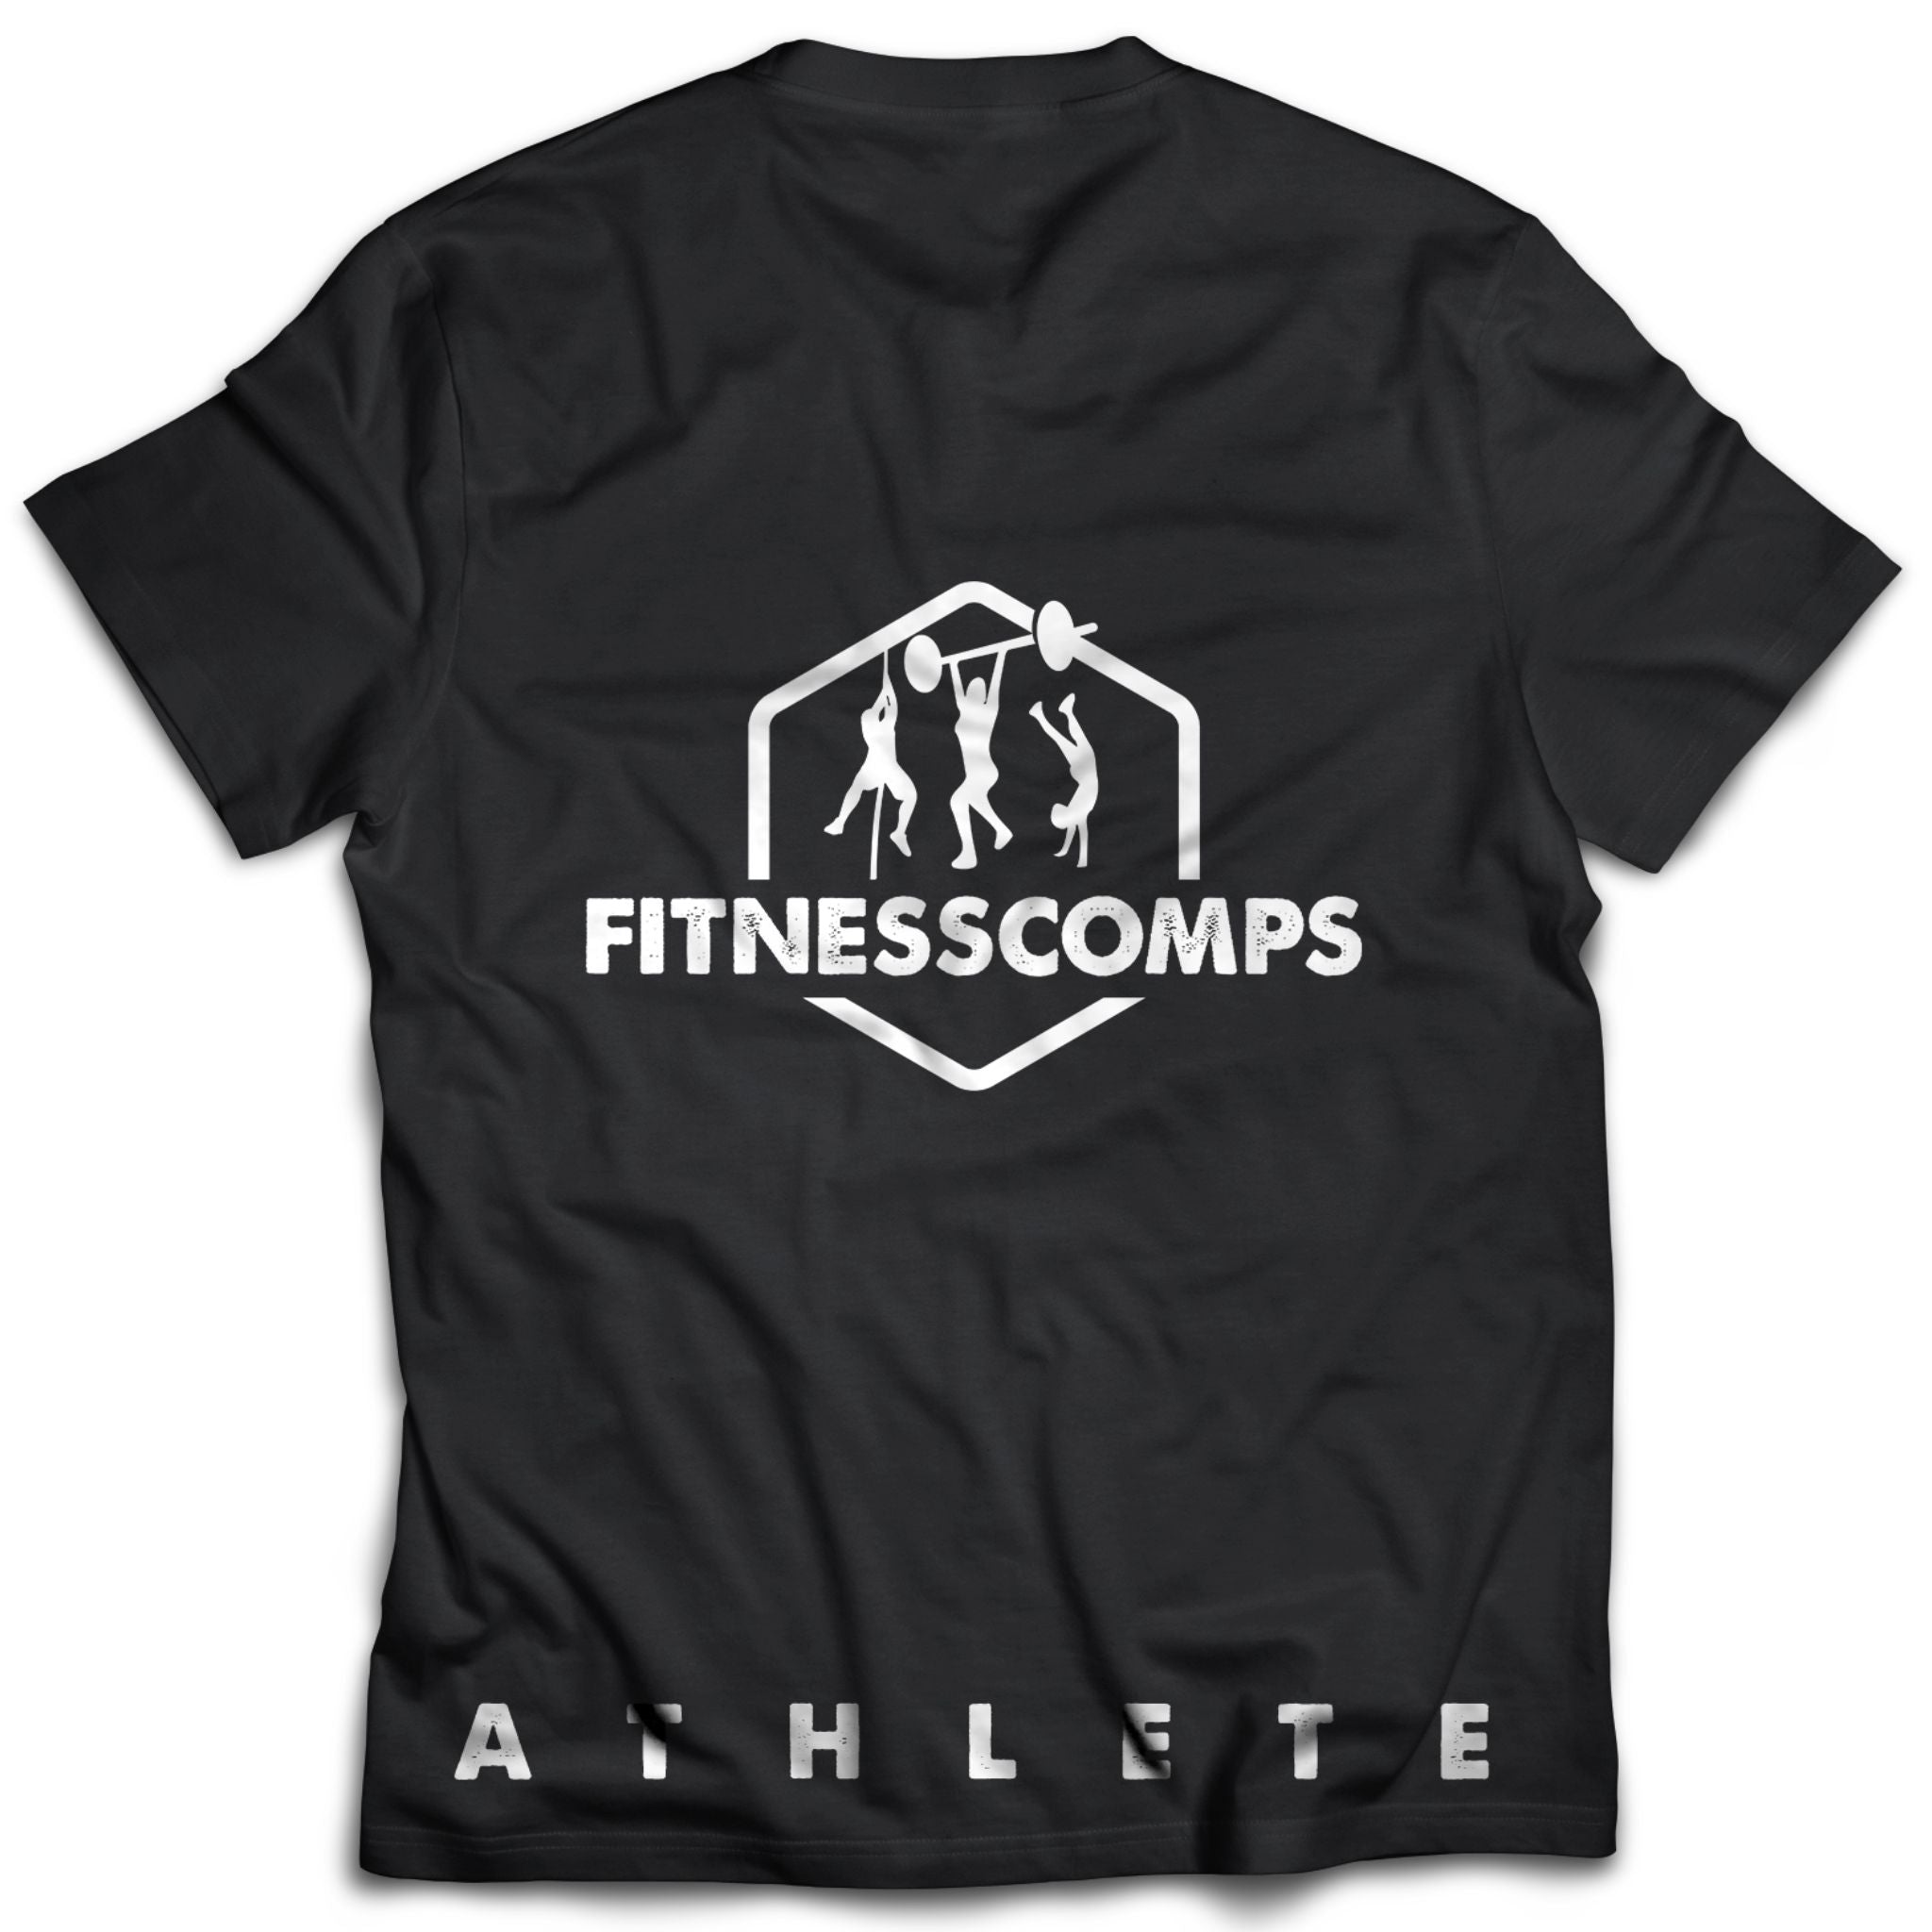 FitnessComps Athlete Tee Black